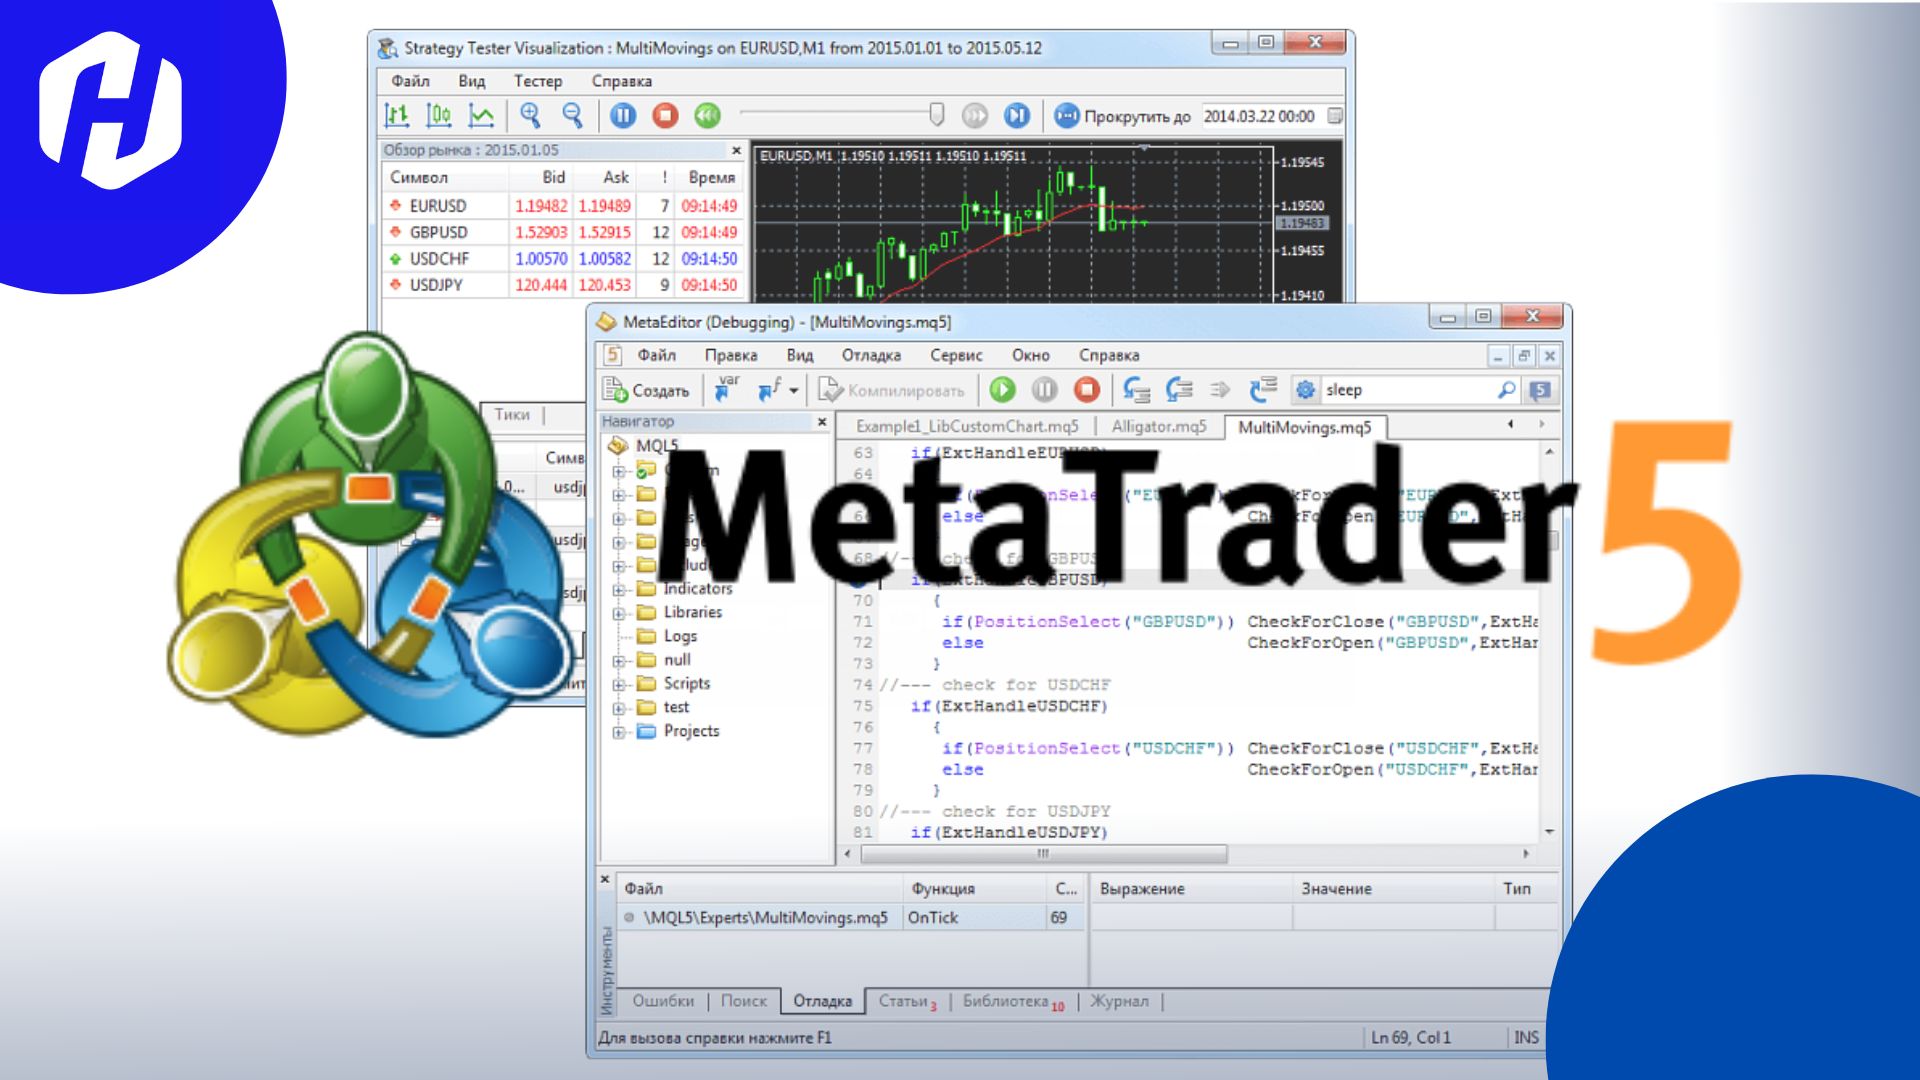 Memanfaatkan MetaEditor untuk EA MetaTrader 5